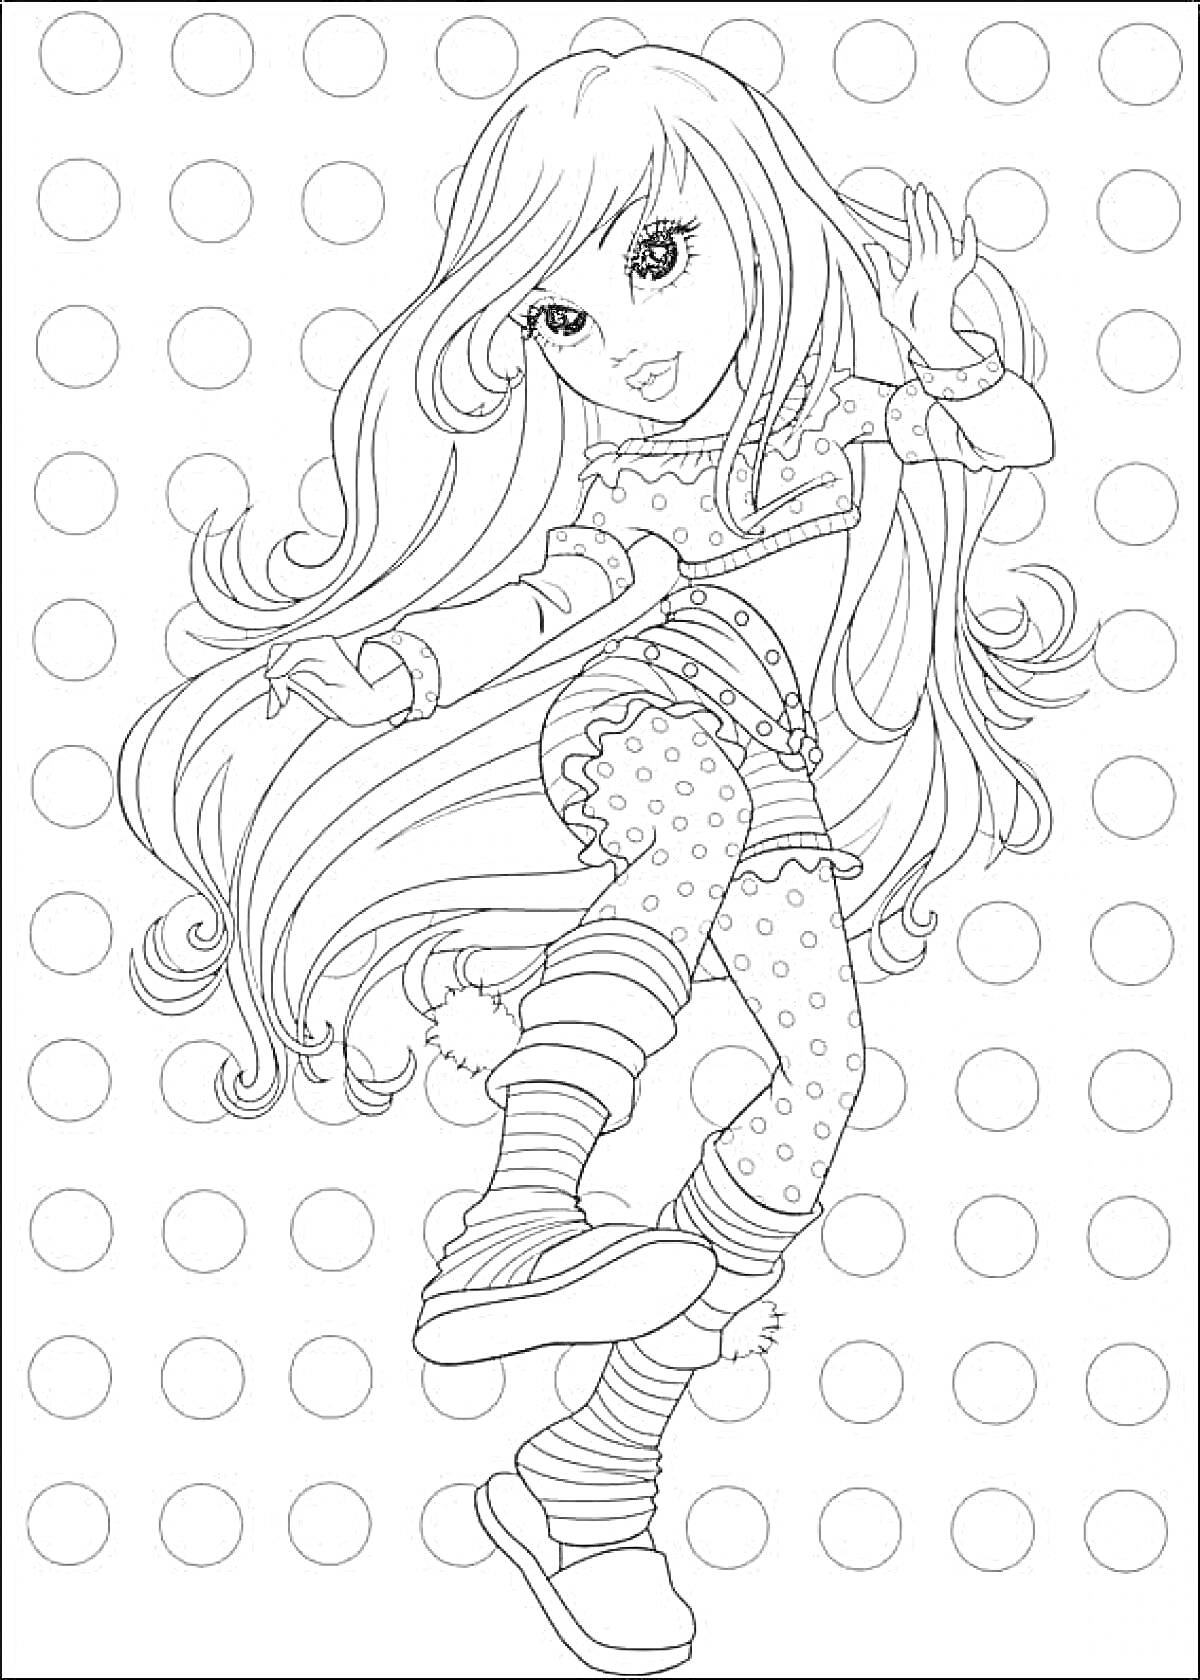 Раскраска Девочка с длинными волосами в костюме с полосатыми носками и узорами в горошек на фоне с кругами